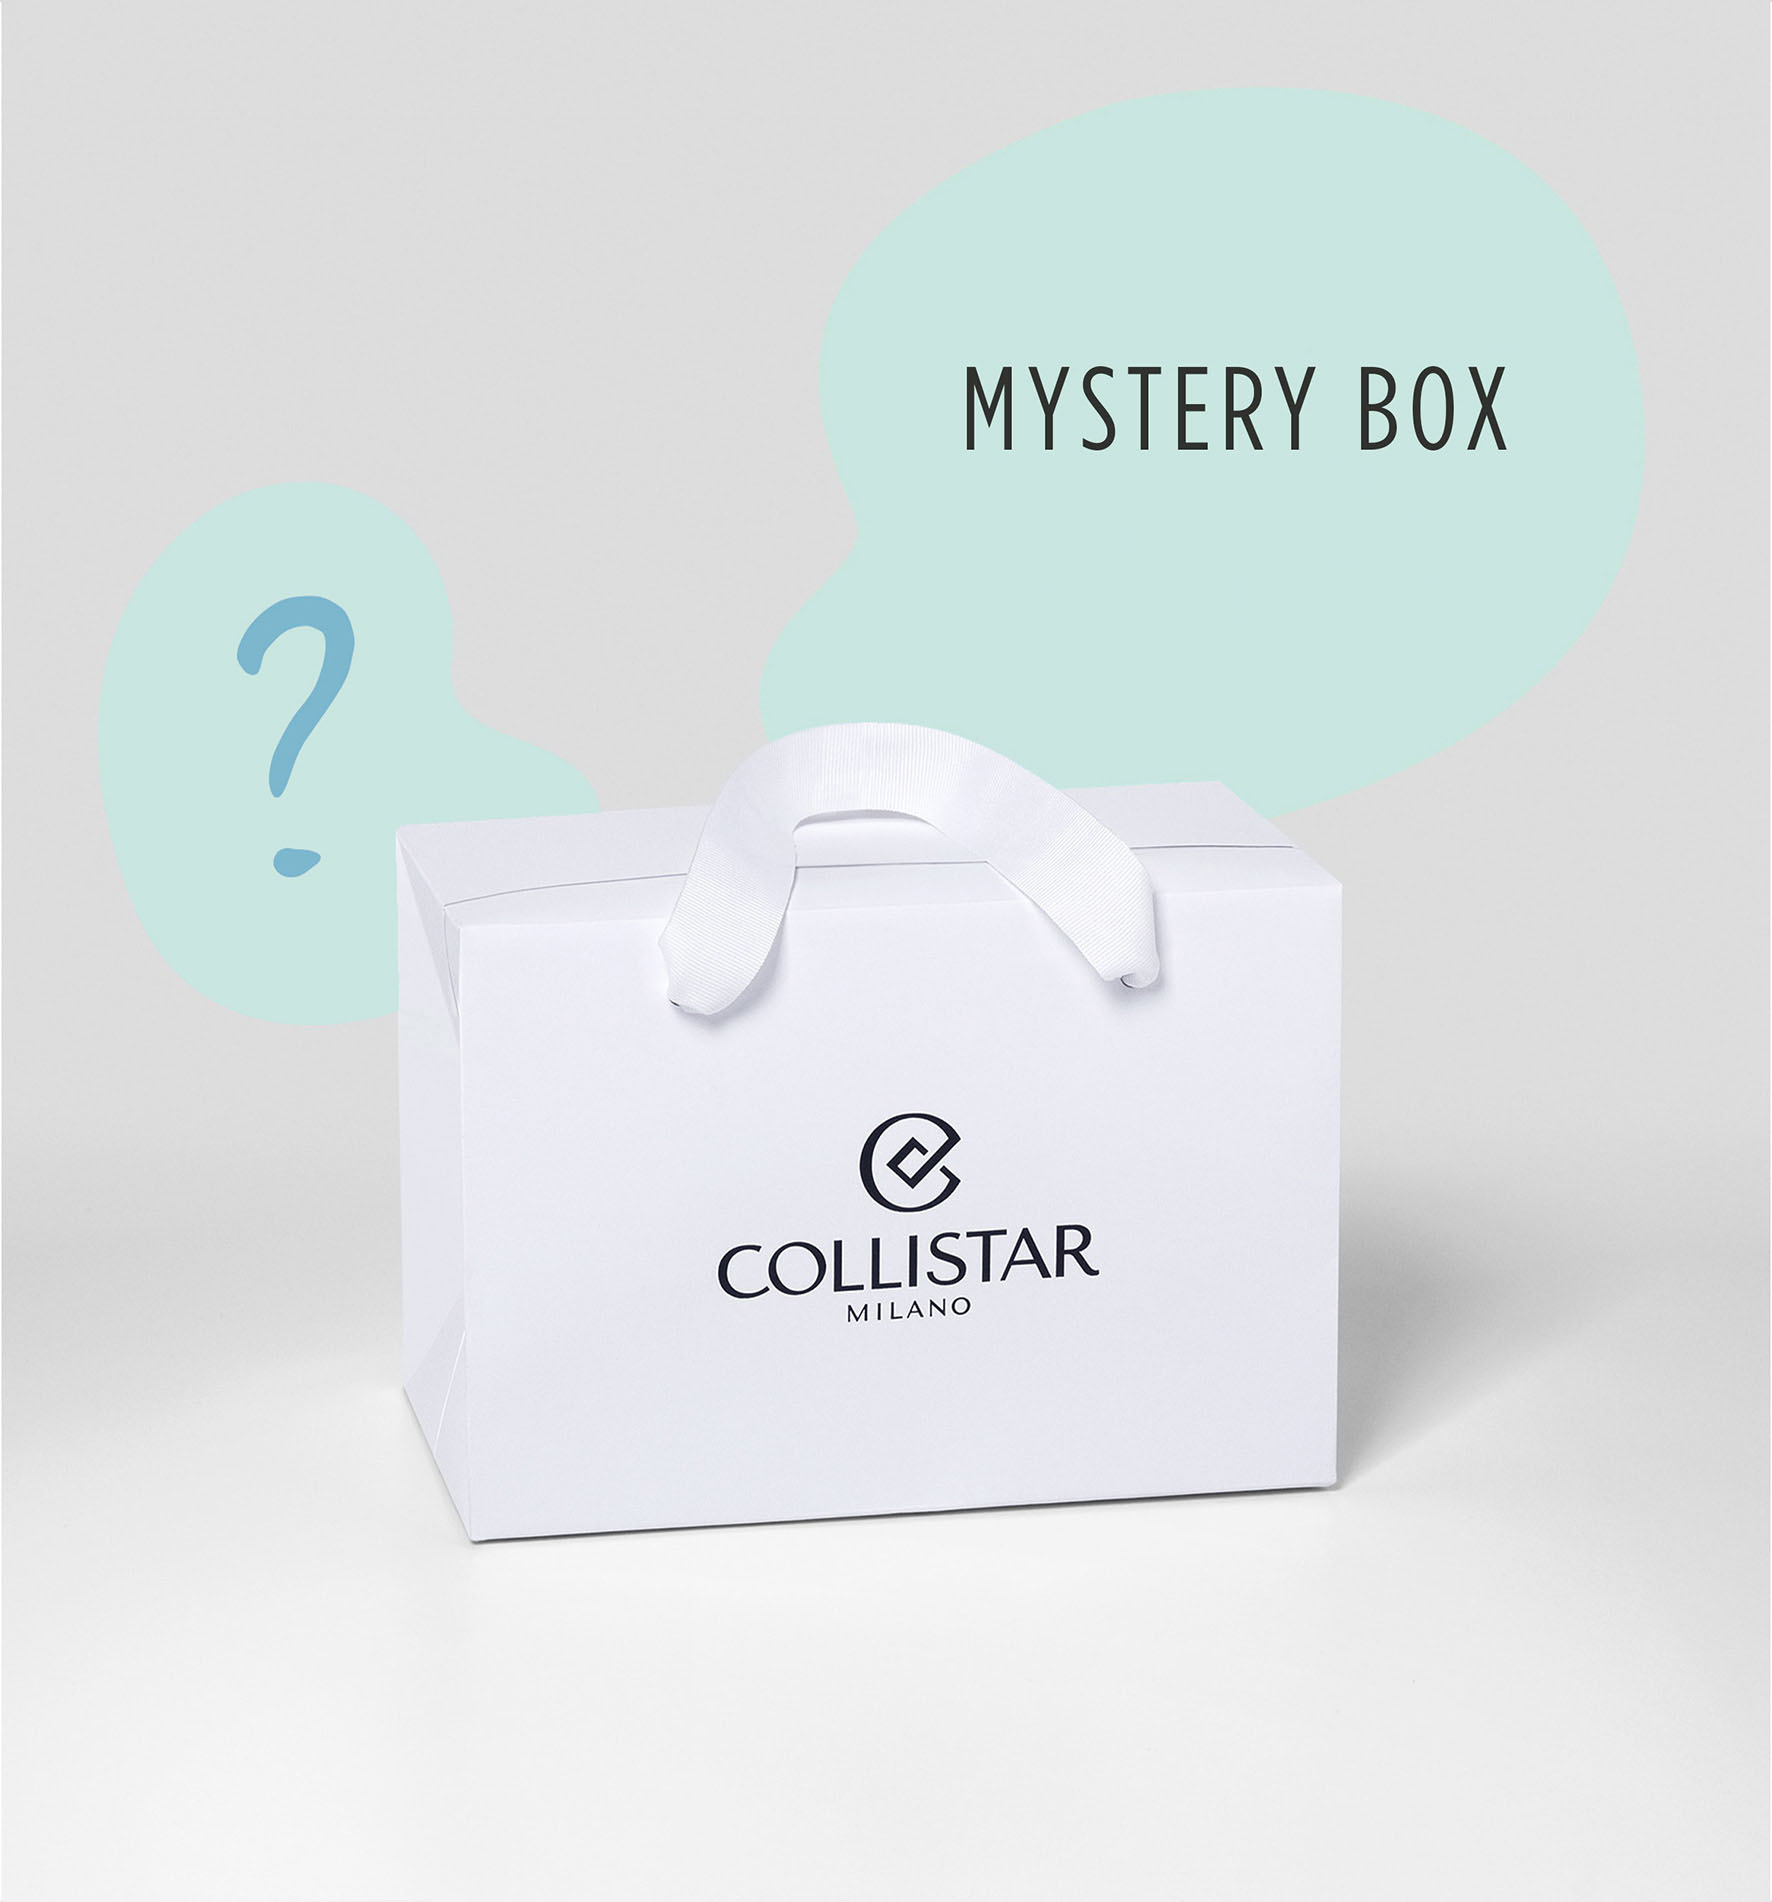 MYSTERY BOX CORPO - Offerte Esclusive | Collistar - Shop Online Ufficiale